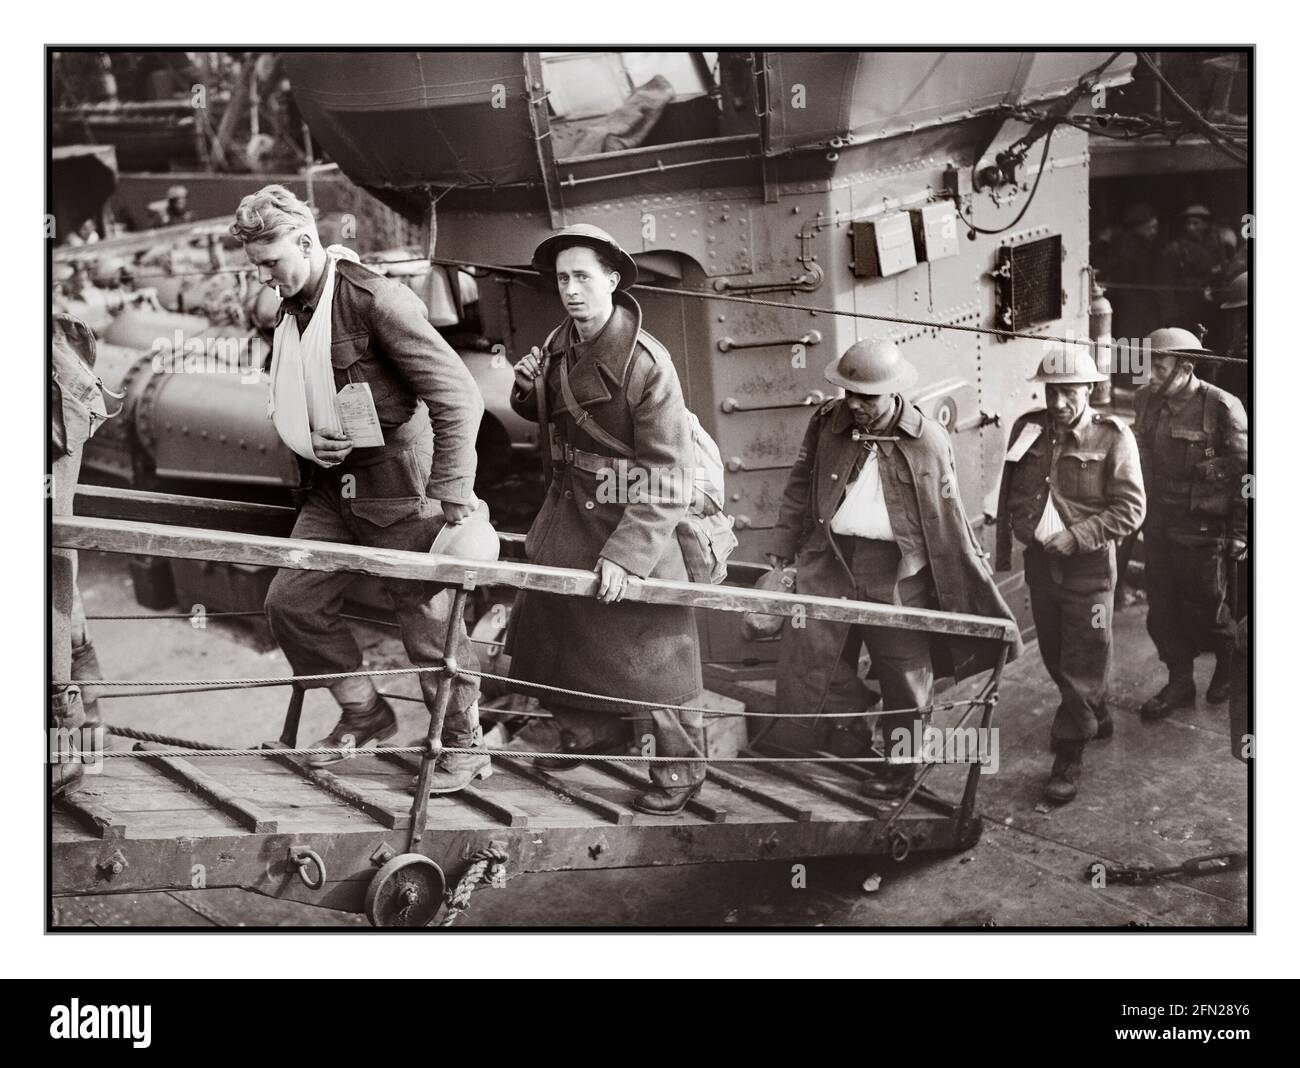 WW2 ÉVACUATION DE DUNKERQUE des soldats britanniques blessés évacués de Dunkerque se rendent dans le gangpland d'un destroyer de la Marine royale à Douvres, le 31 mai 1940. Deuxième Guerre mondiale Photo